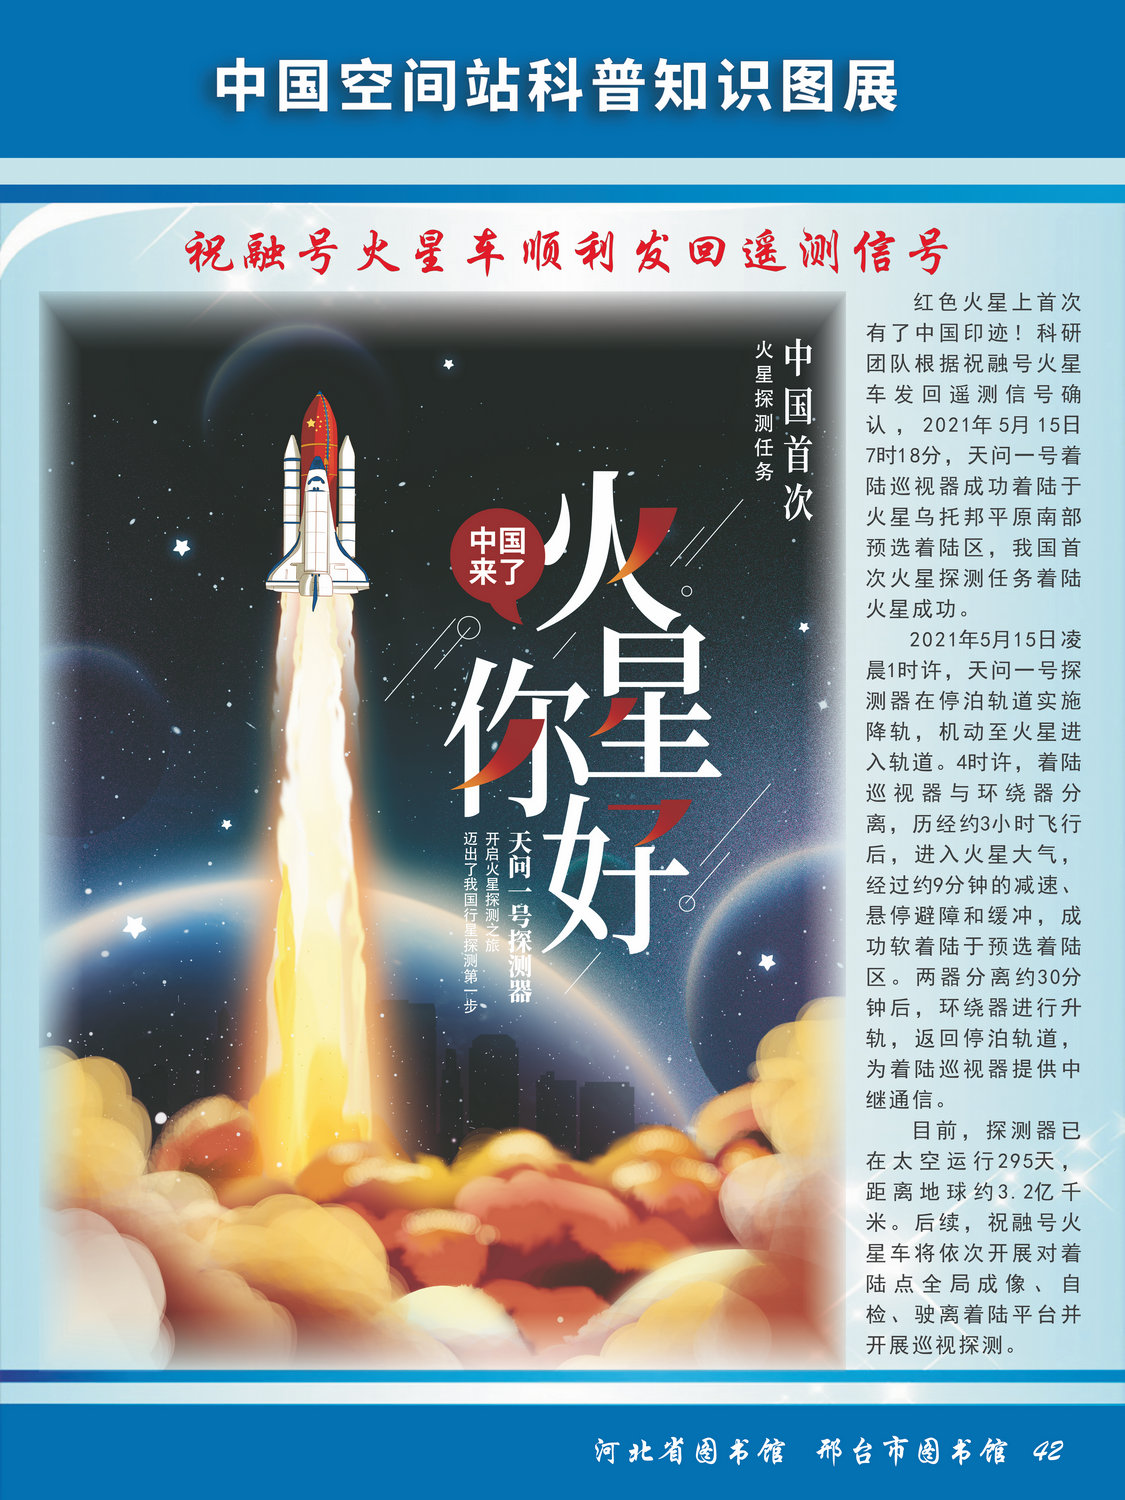 中国空间站科普知识图文展_图42